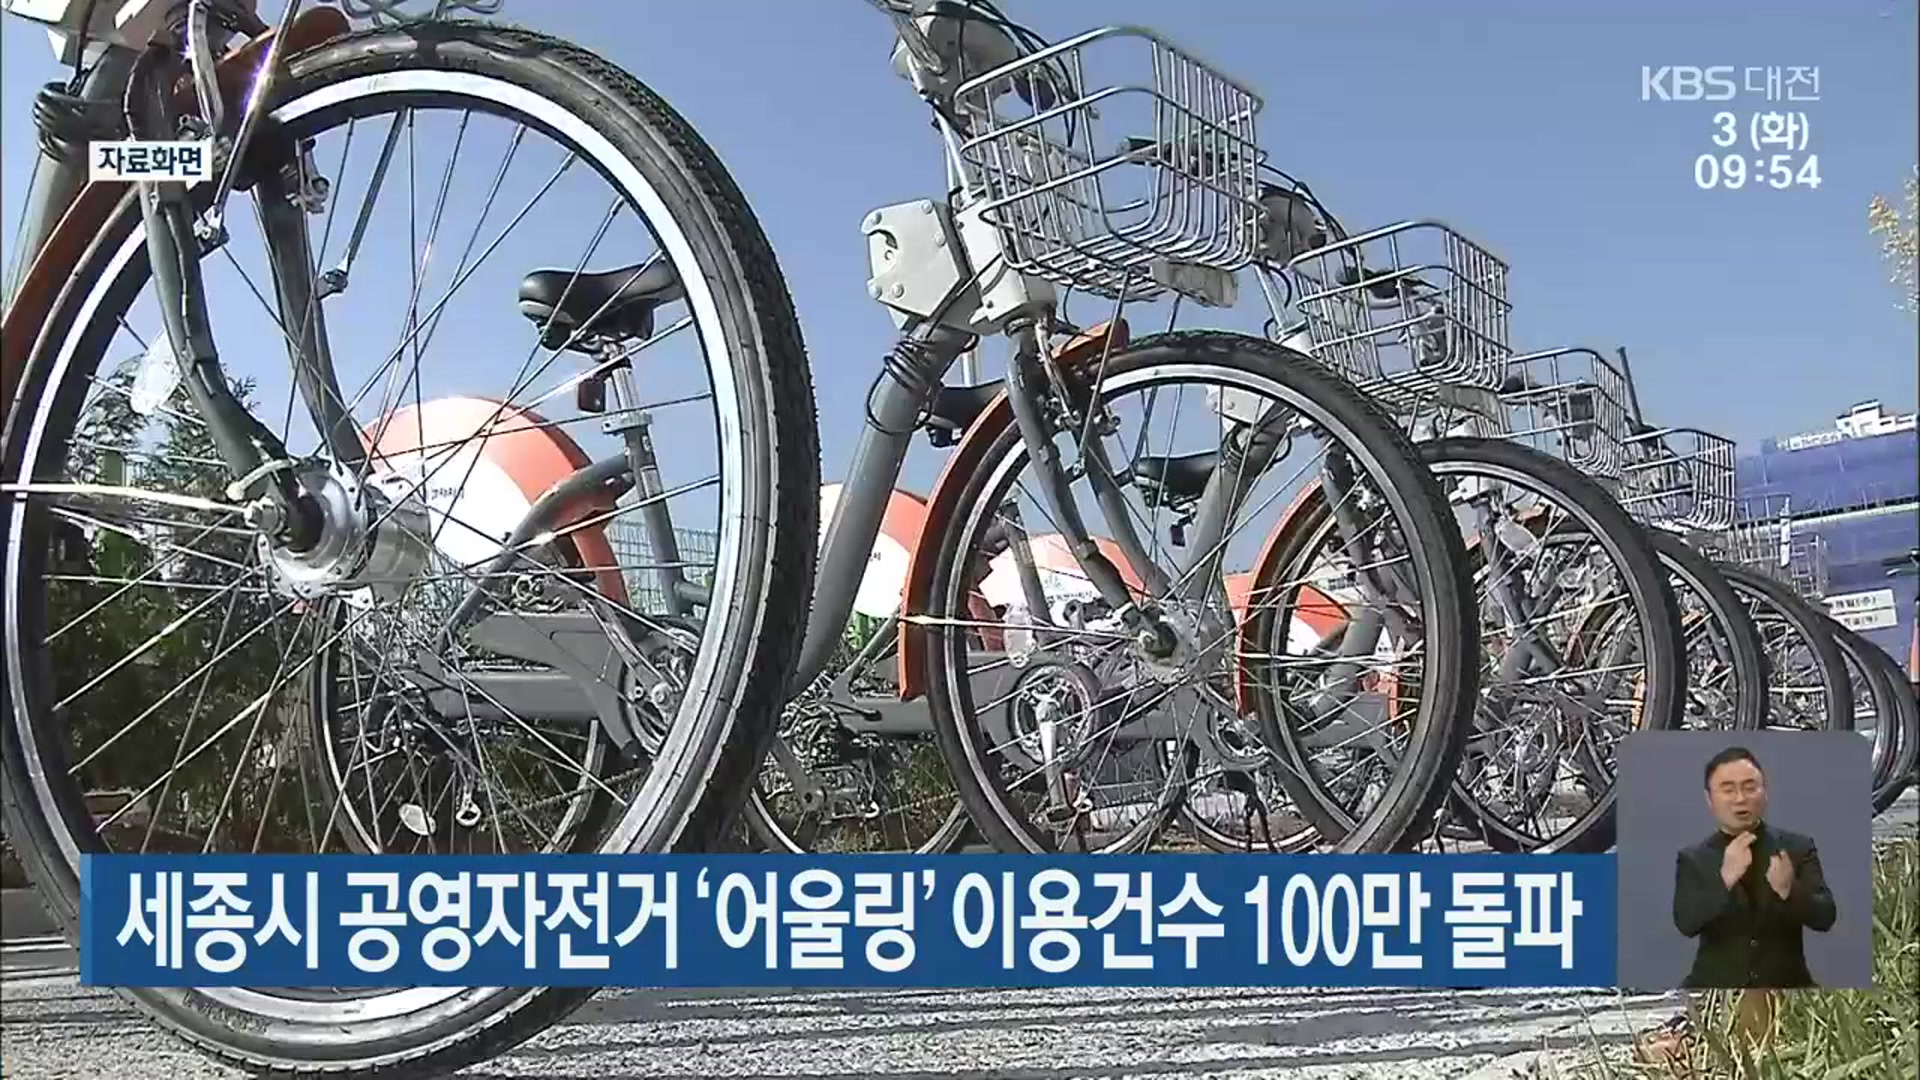 세종시 공영자전거 ‘어울링’ 이용건수 100만 돌파